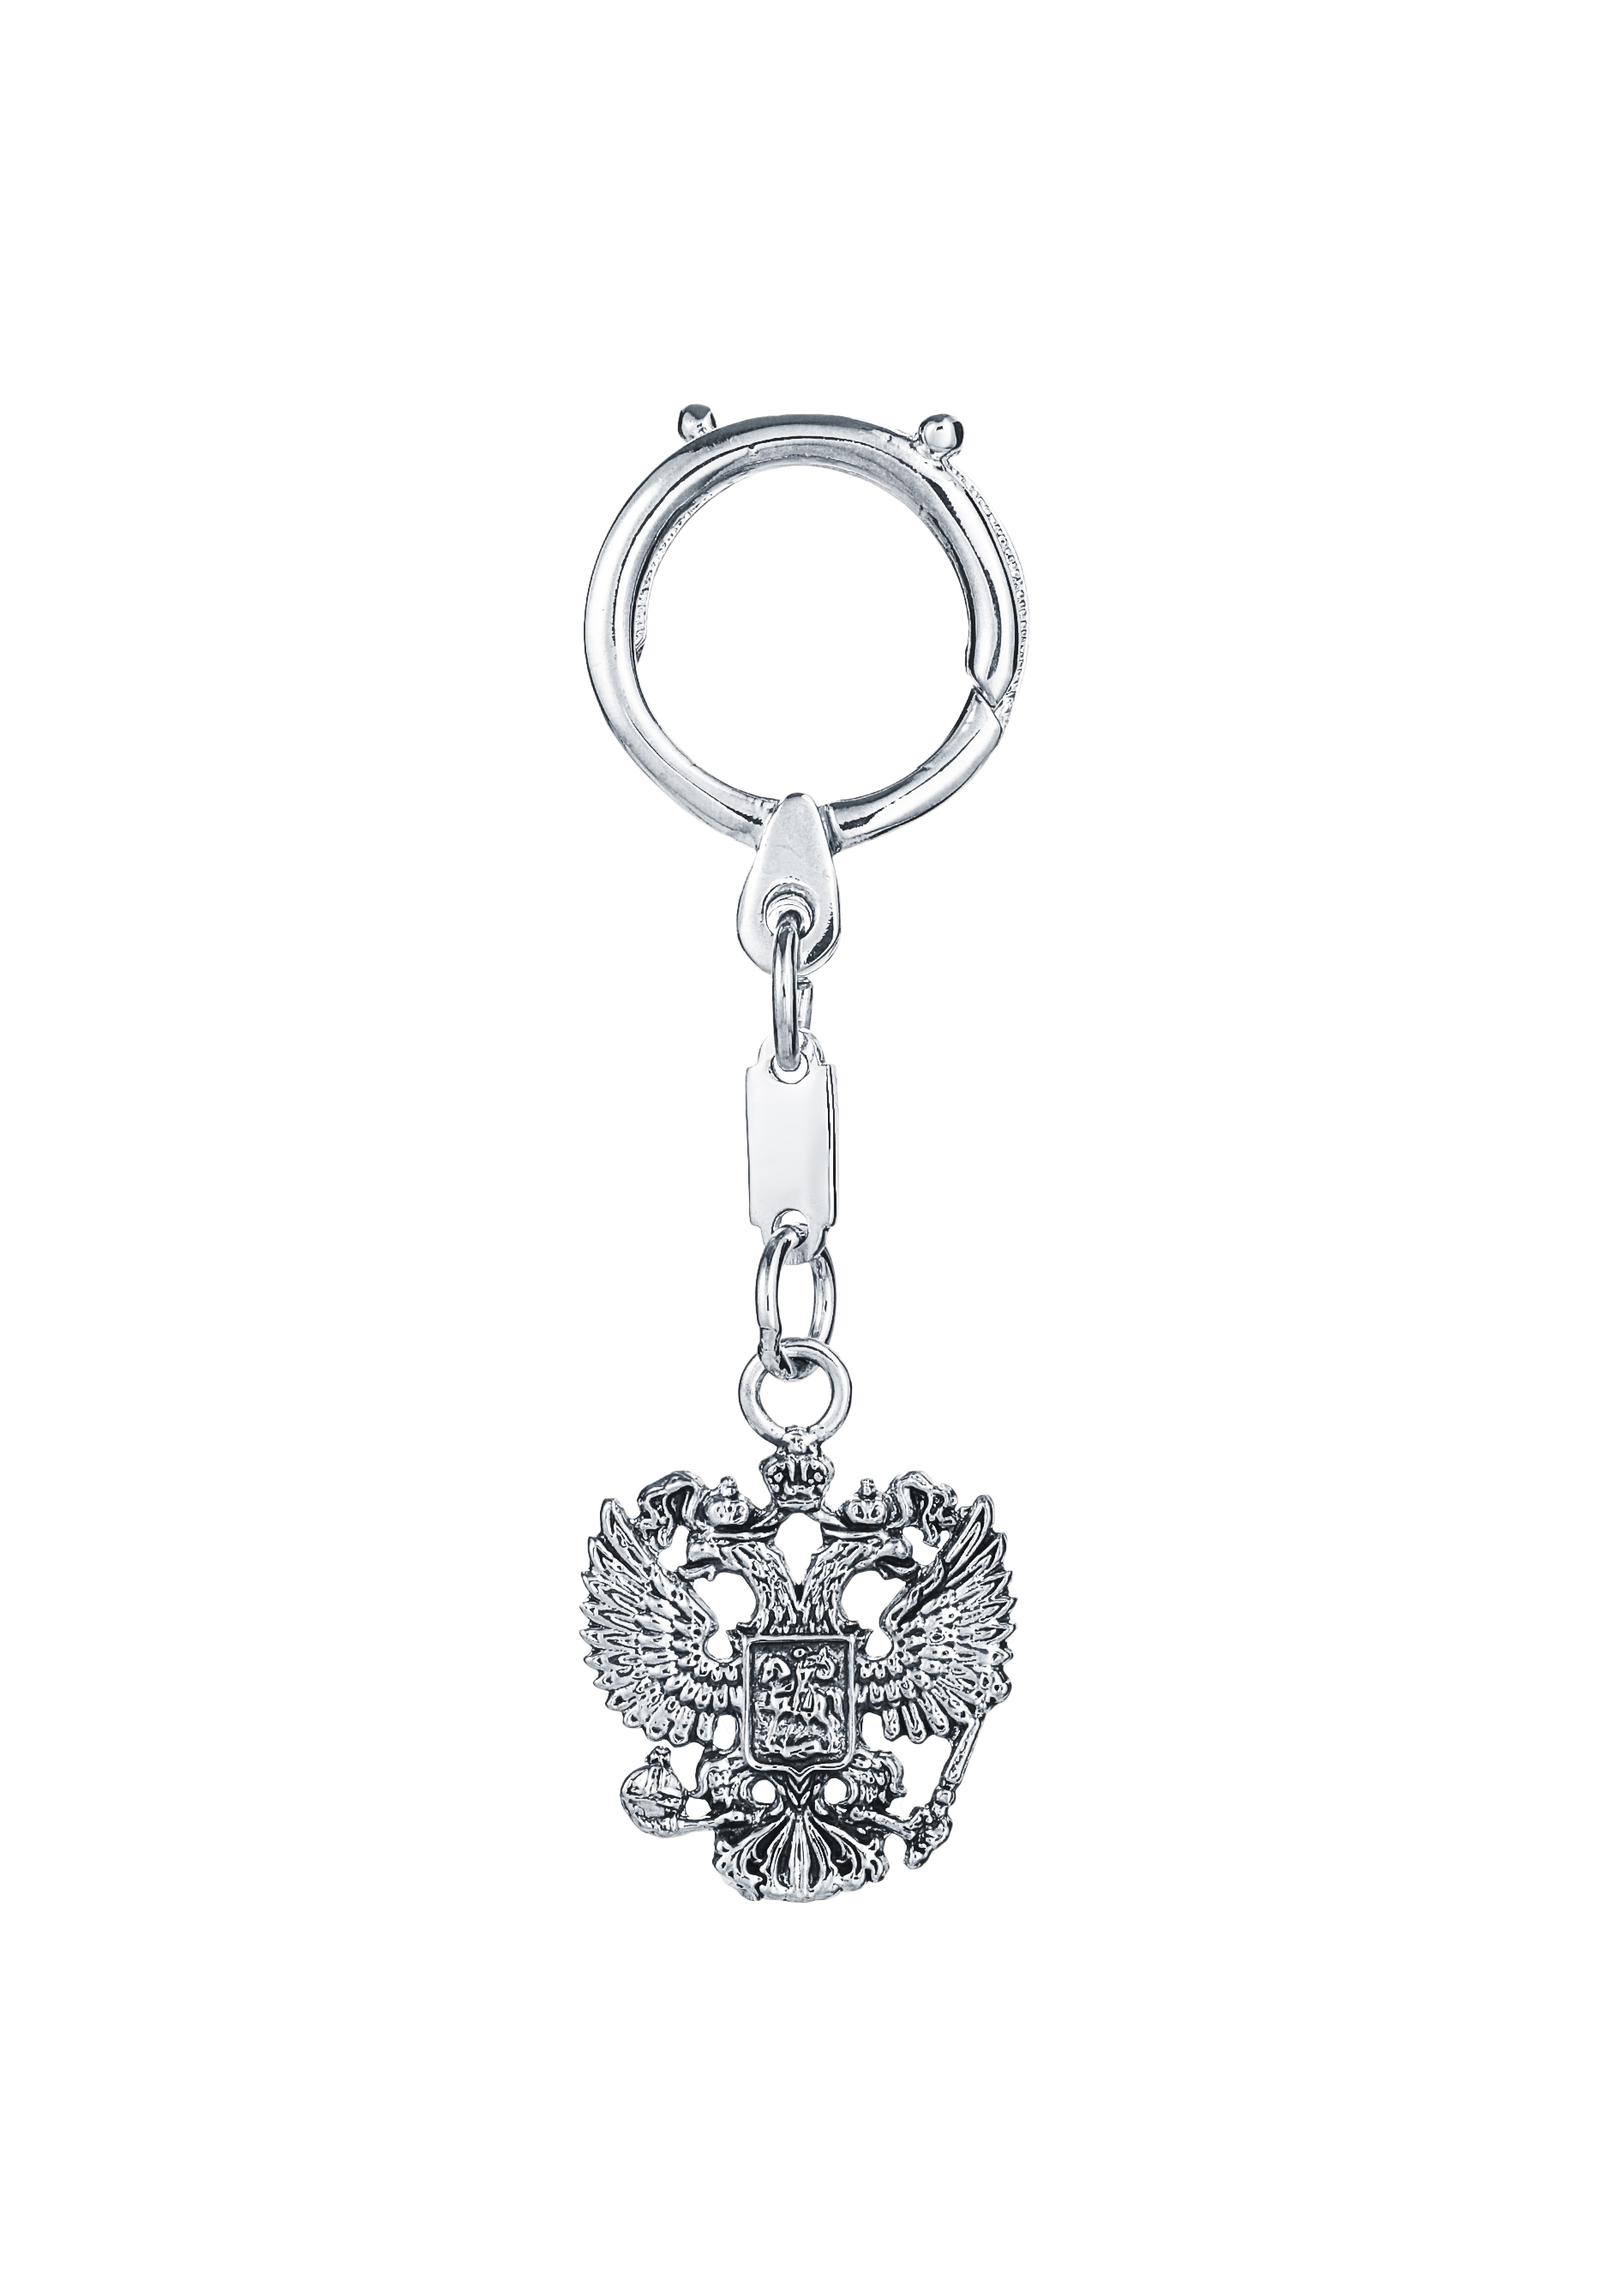 Серебряный брелок для ключей брелок автомобильный плетёный mitsubishi брелок для авто брелок для ключей женский брелок для ключей мужской брелок для ключей автомобиля